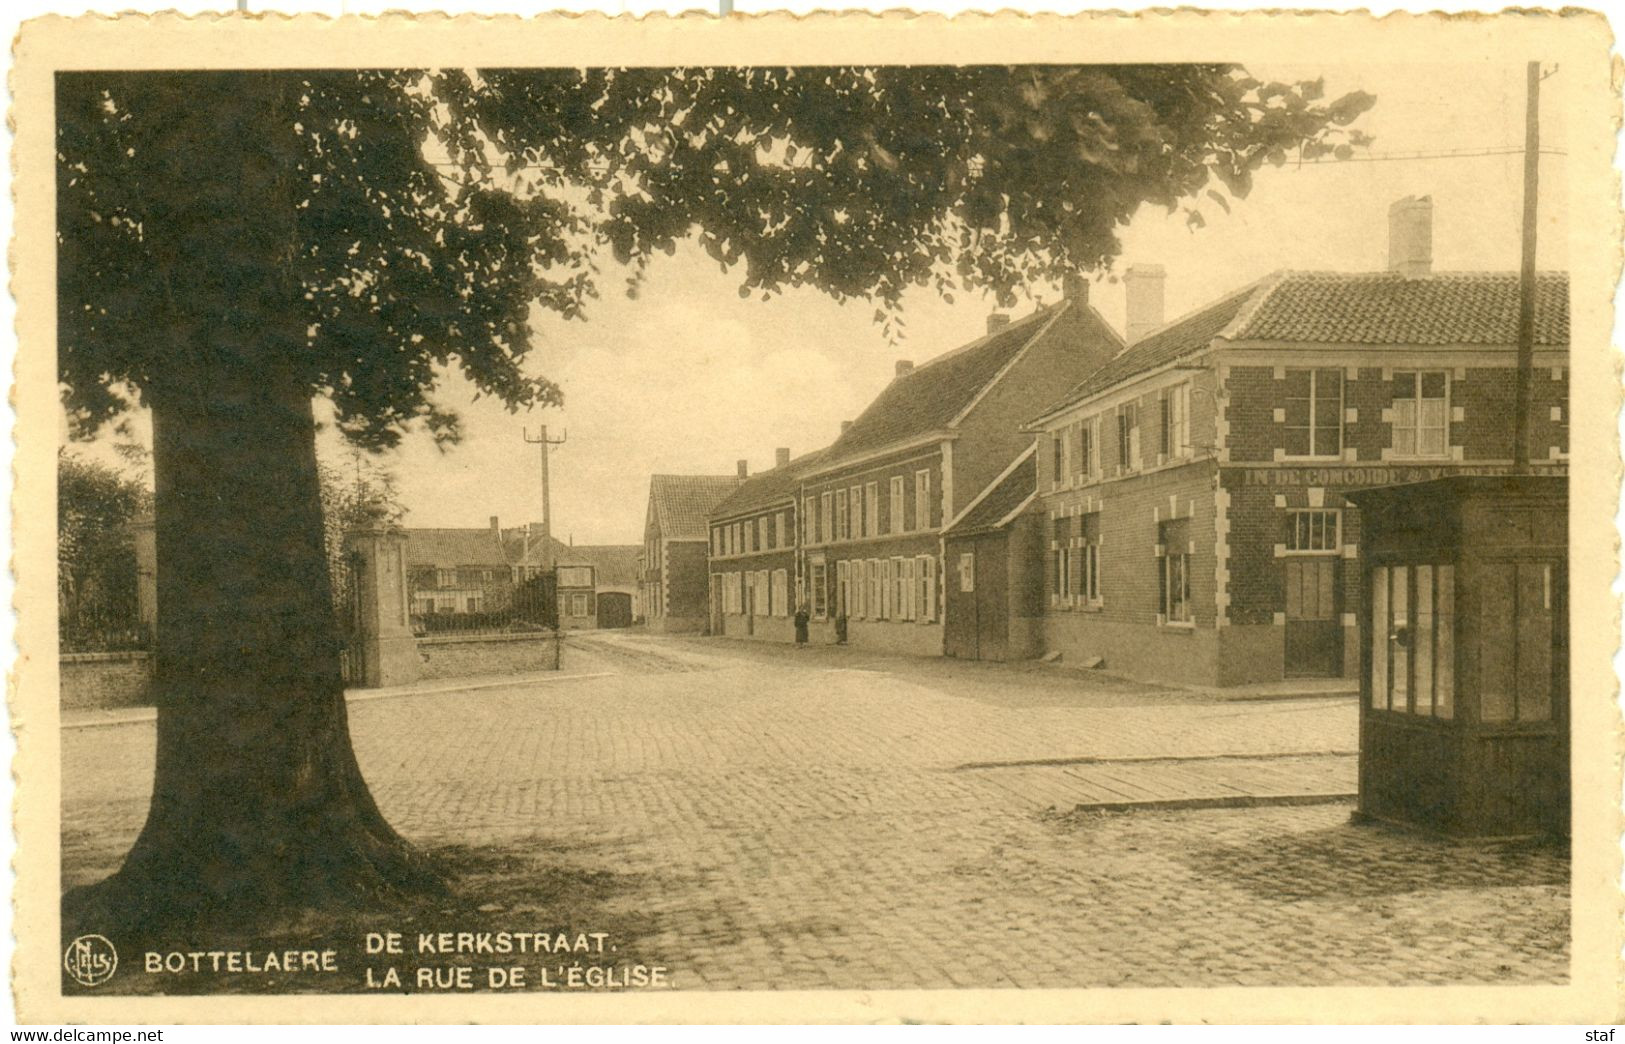 Bottelare - De Kerkstraat - Merelbeke